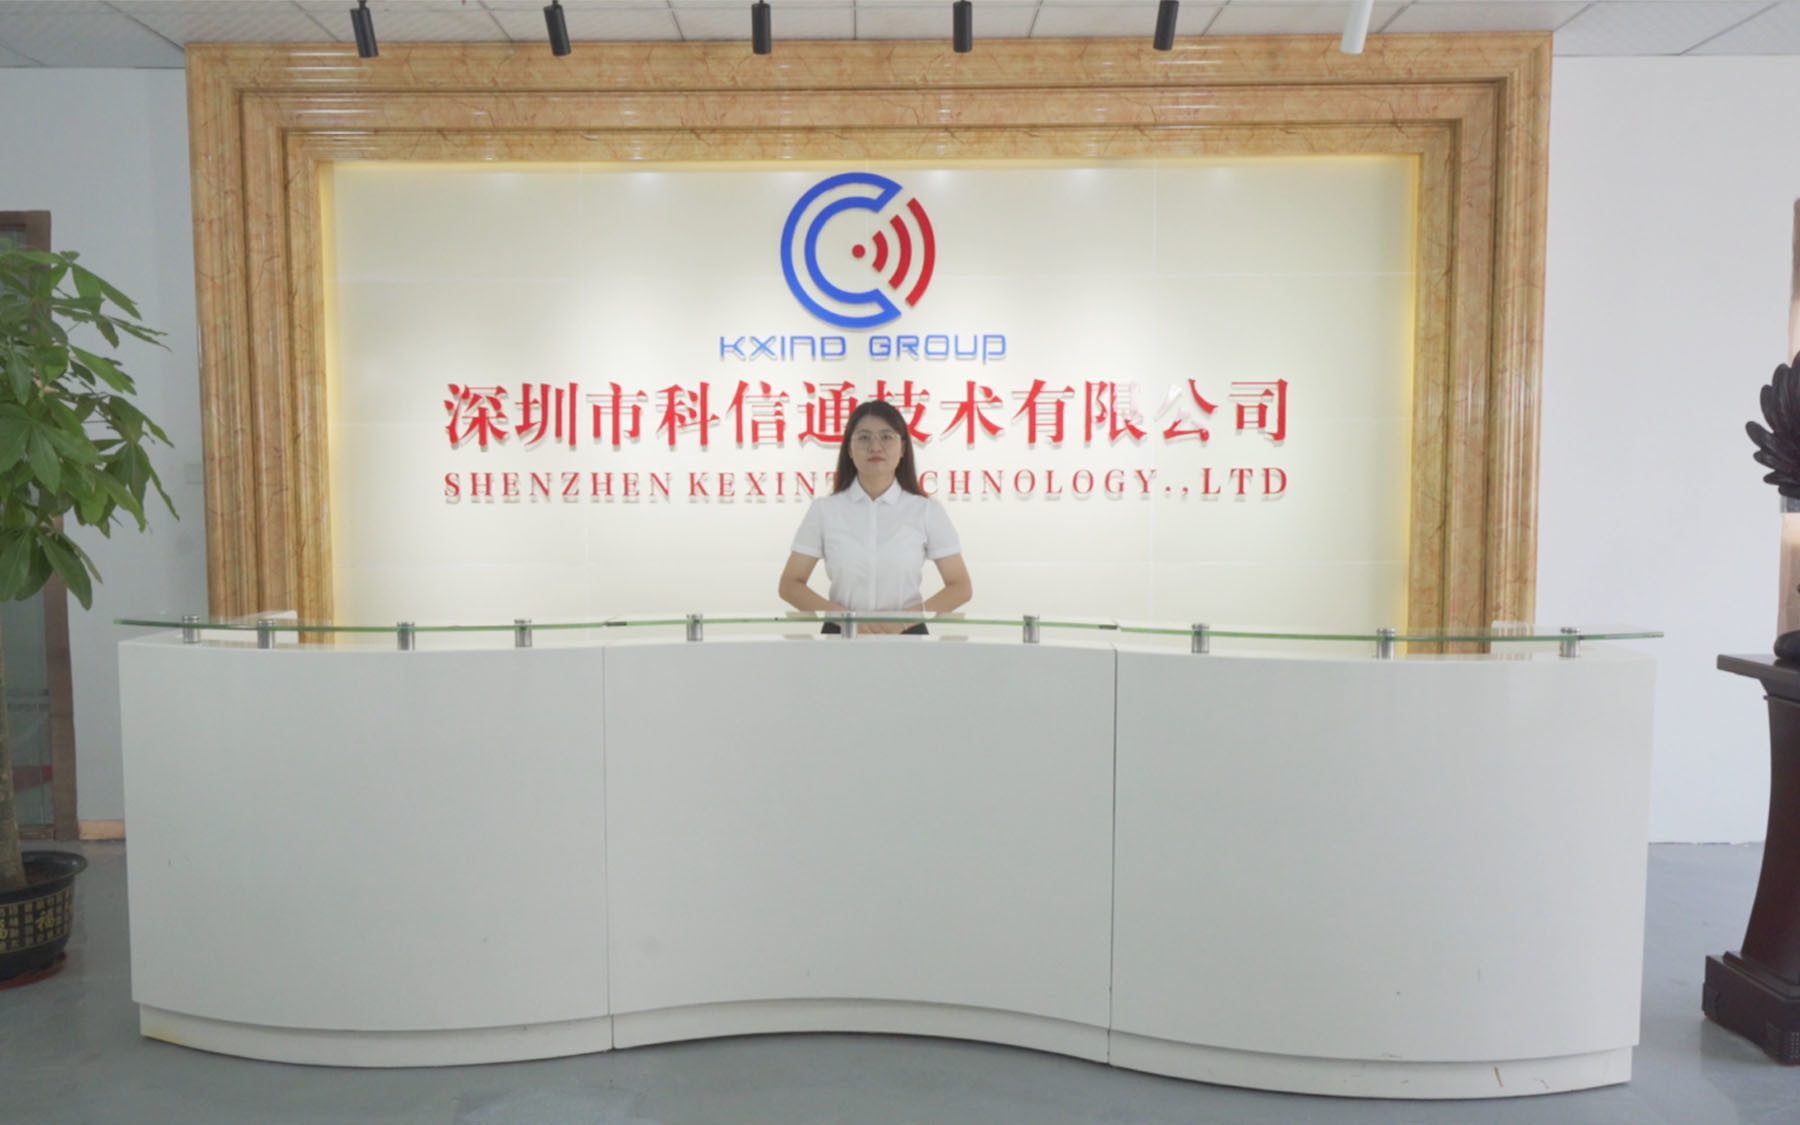 ประเทศจีน SHENZHEN KXIND COMMUNICATIONS CO.,LTD รายละเอียด บริษัท